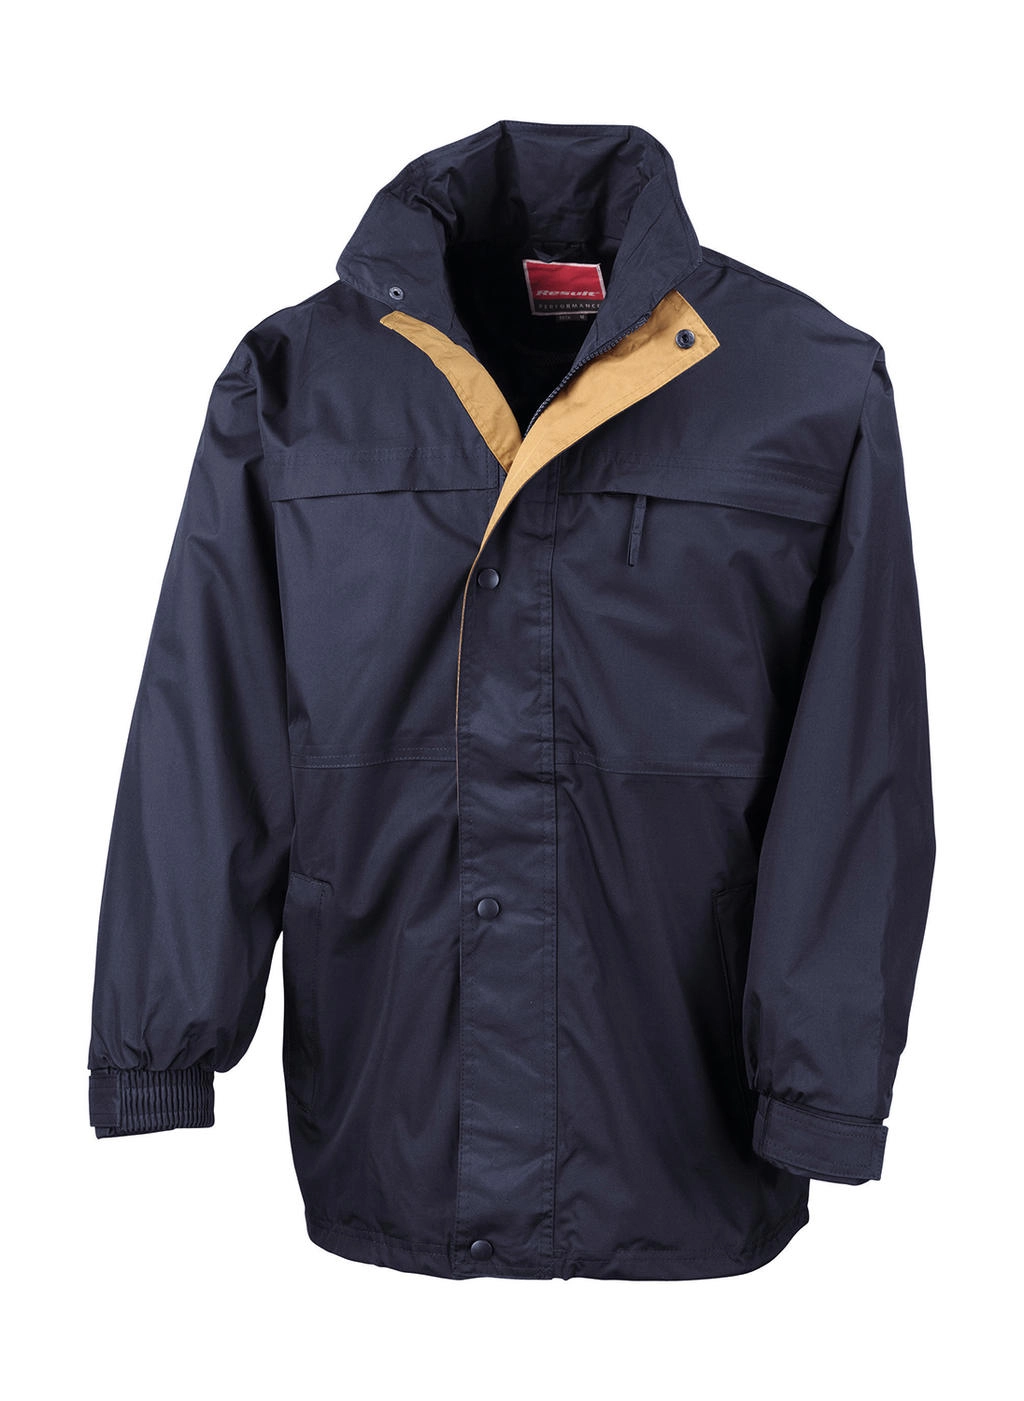 Mid-Season Jacket zum Besticken und Bedrucken in der Farbe Navy/Sand mit Ihren Logo, Schriftzug oder Motiv.